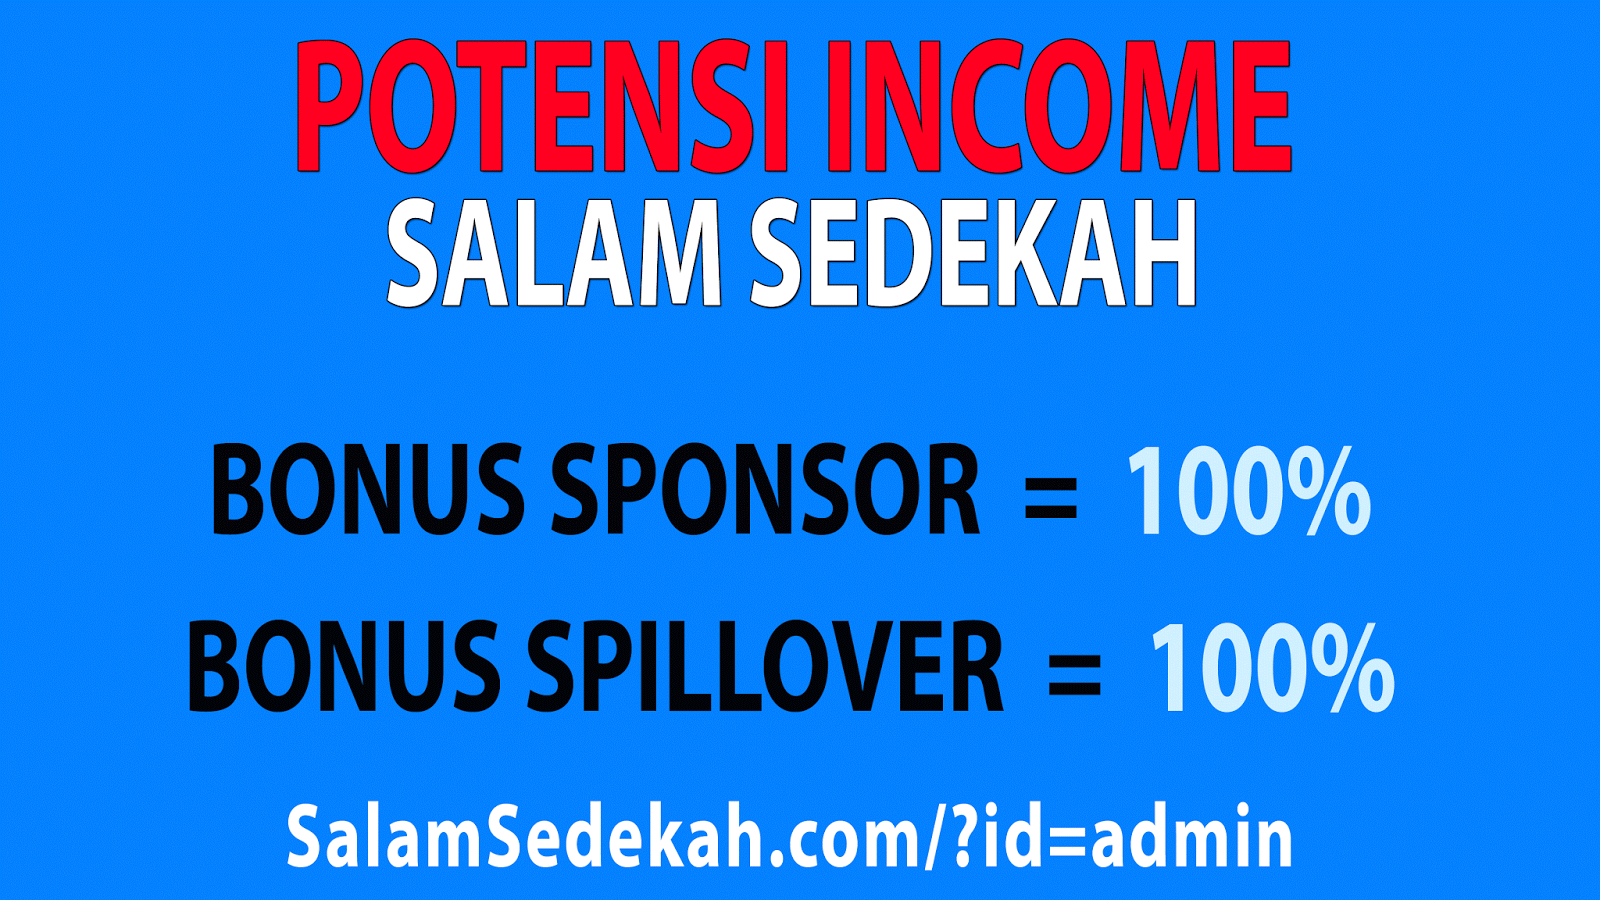 Salam Sedekah bonus sponsor 100% dan bonsu spillover 100%